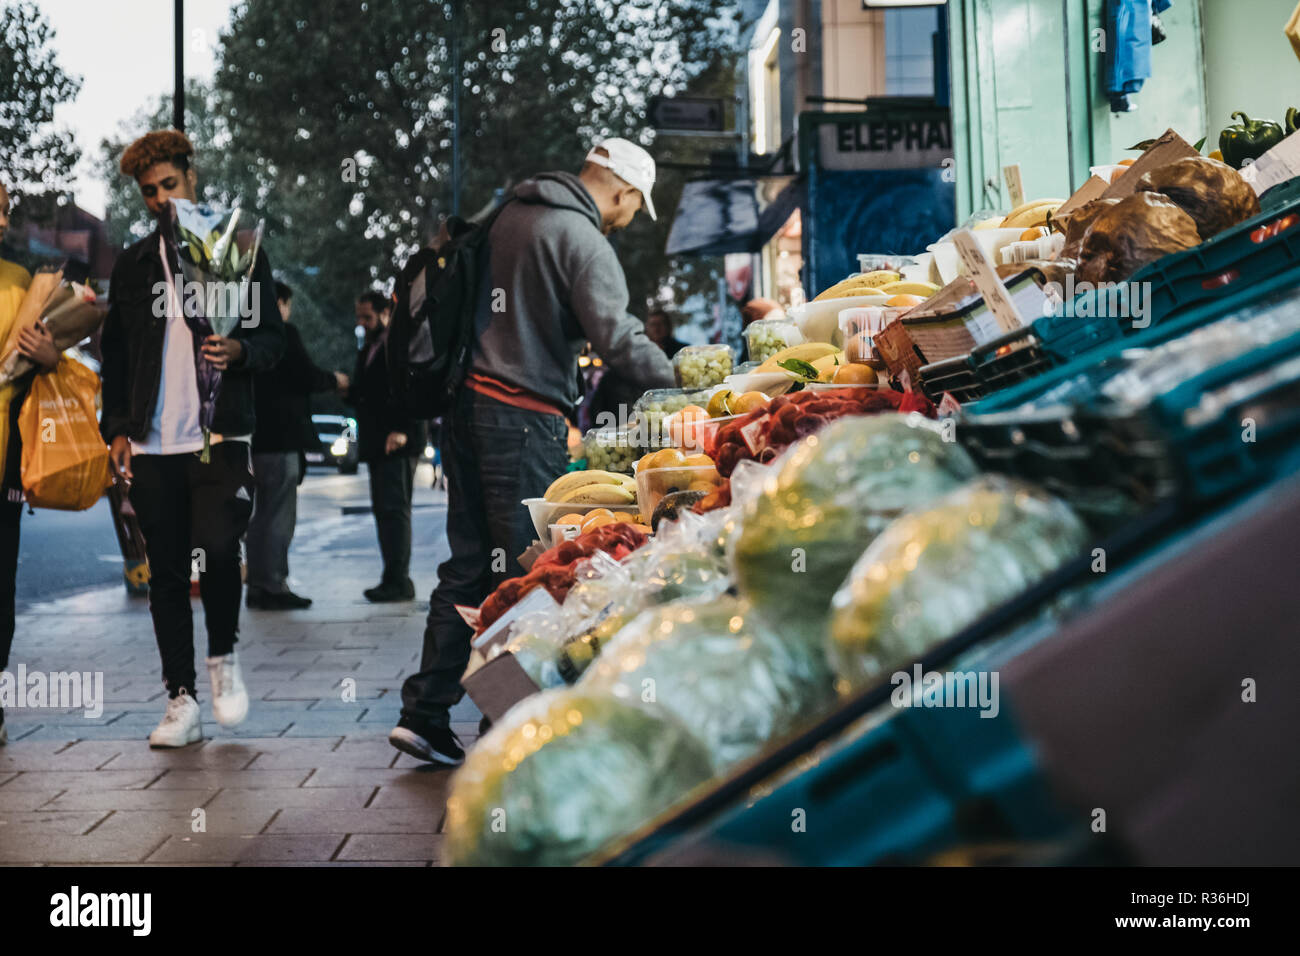 Londres, Royaume-Uni - 02 novembre, 2018 : fruits et légumes frais à la vente à un dépanneur à Londres, au Royaume-Uni. Ces magasins sont situés dans toute la ville Banque D'Images